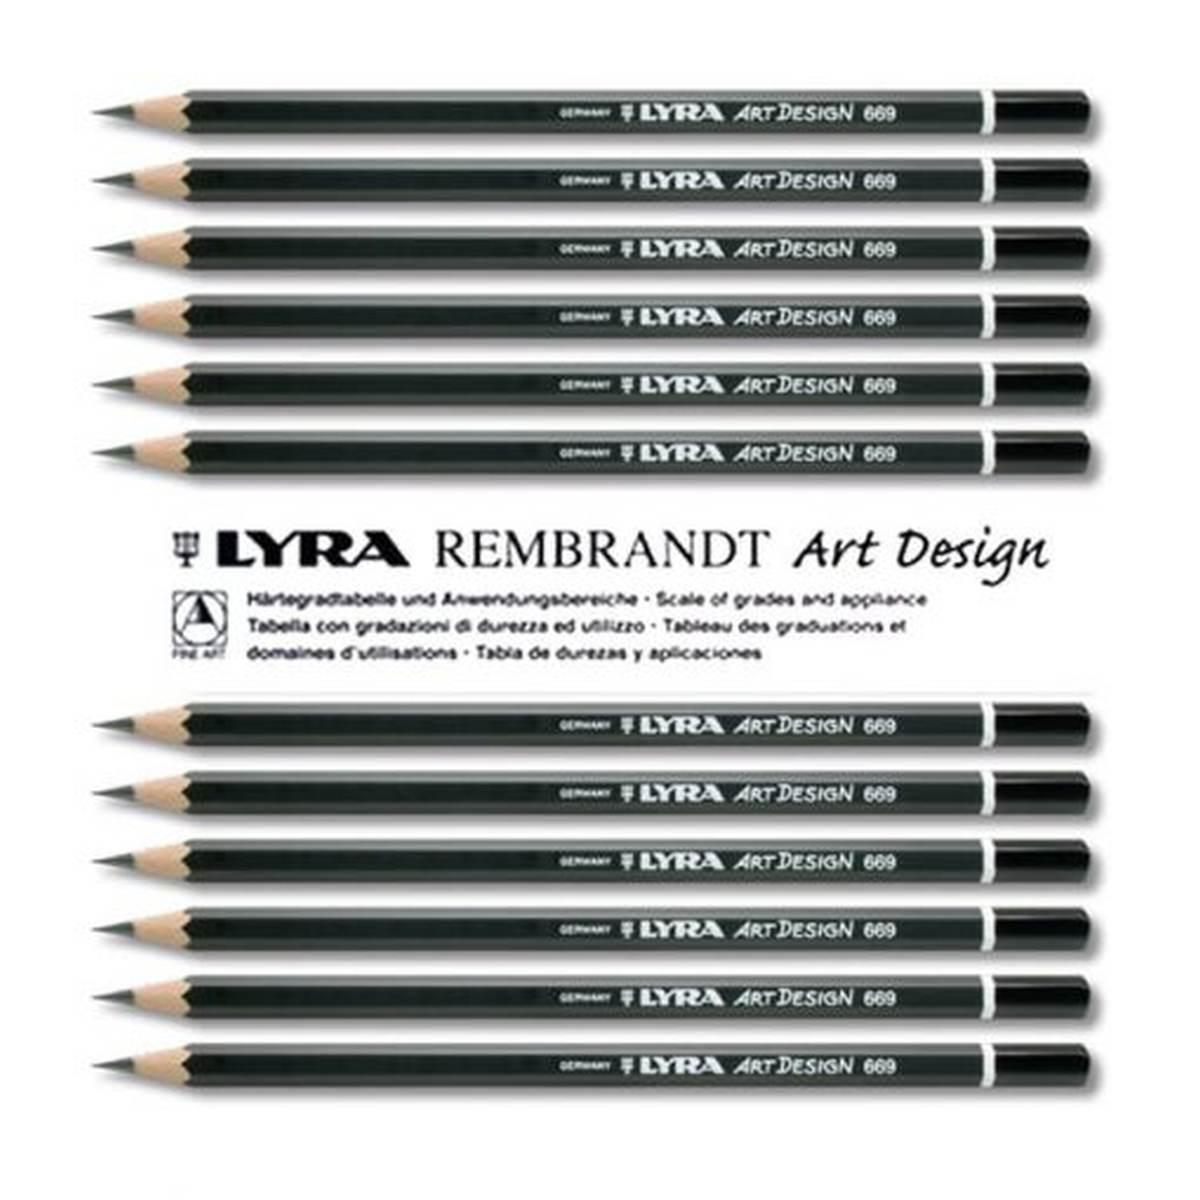 Lyra rembrandt art design - matita di grafite finissima ideale per il disegno artistico e tecnico - diametro mina da 2 a 2,8 mm